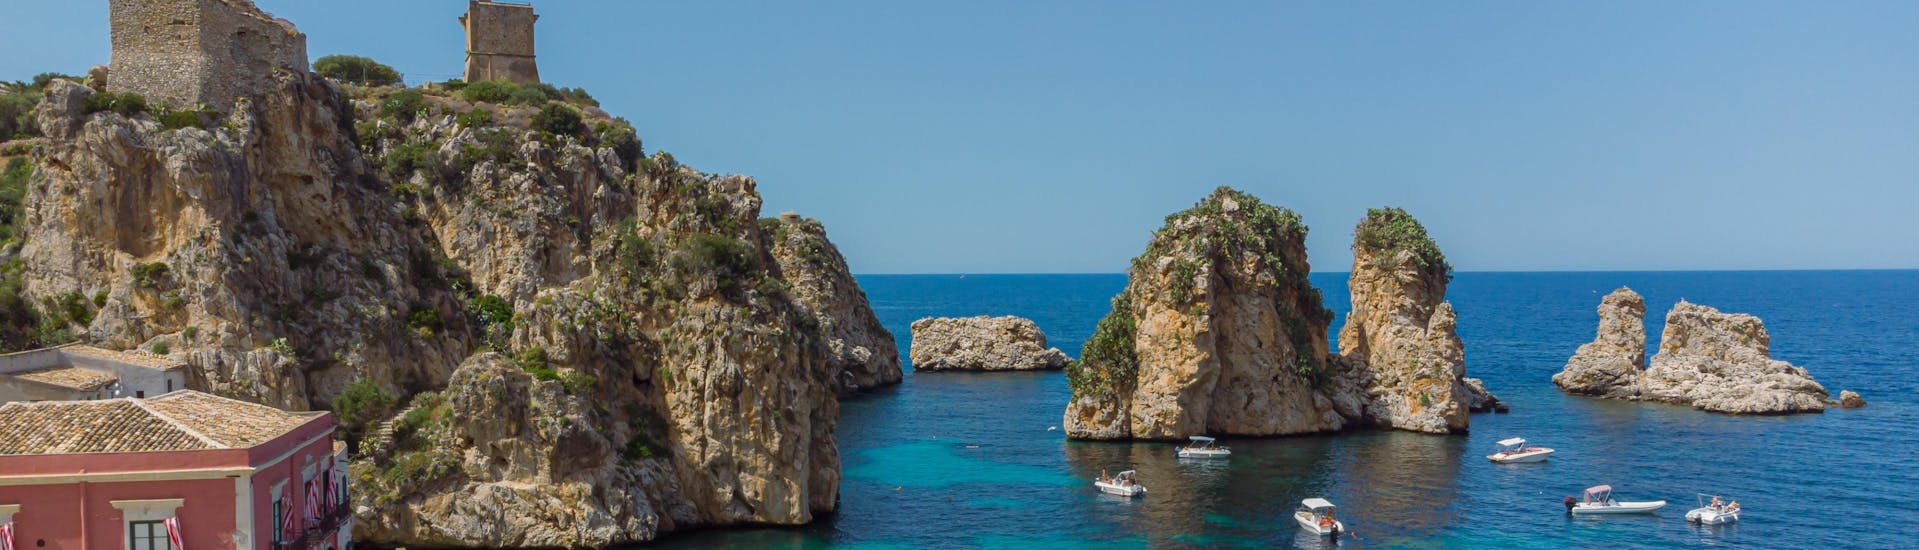 Ein wunderbarer Blick auf die Faraglioni von Scopello, ein beliebtes Ziel für Bootstouren auf Sizilien.